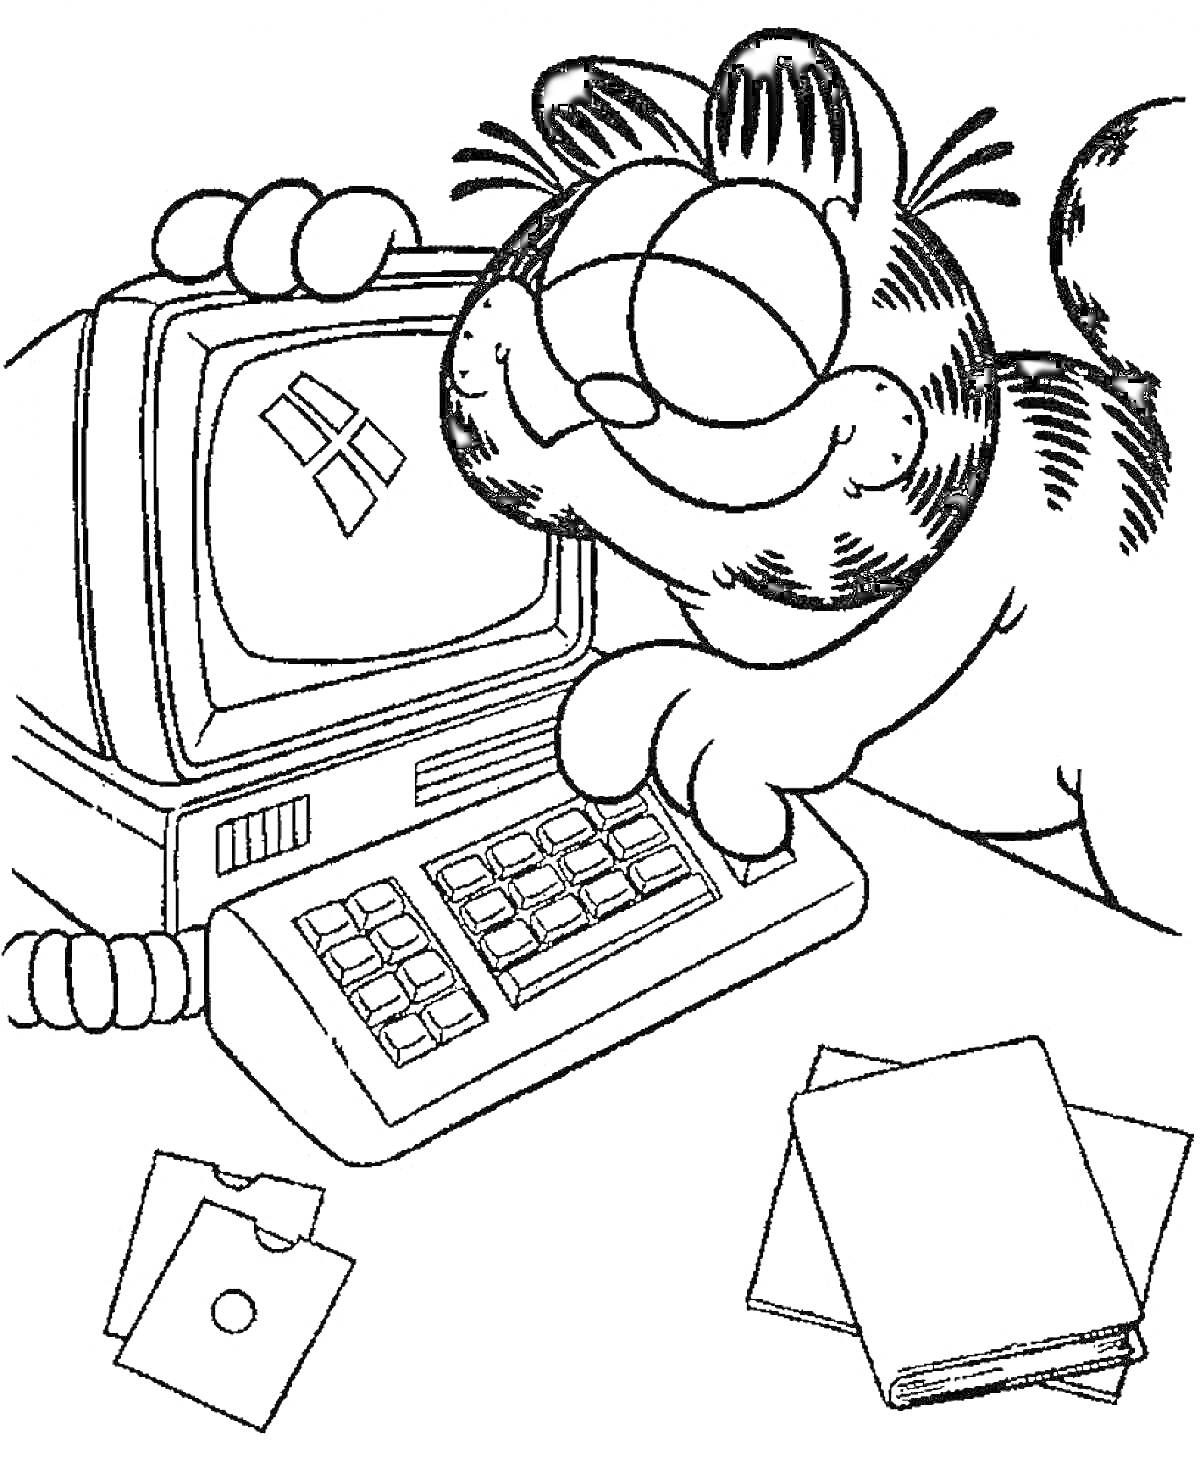 Кот за компьютером со старым монитором и клавиатурой, рядом лежат две папки с документами и дискета